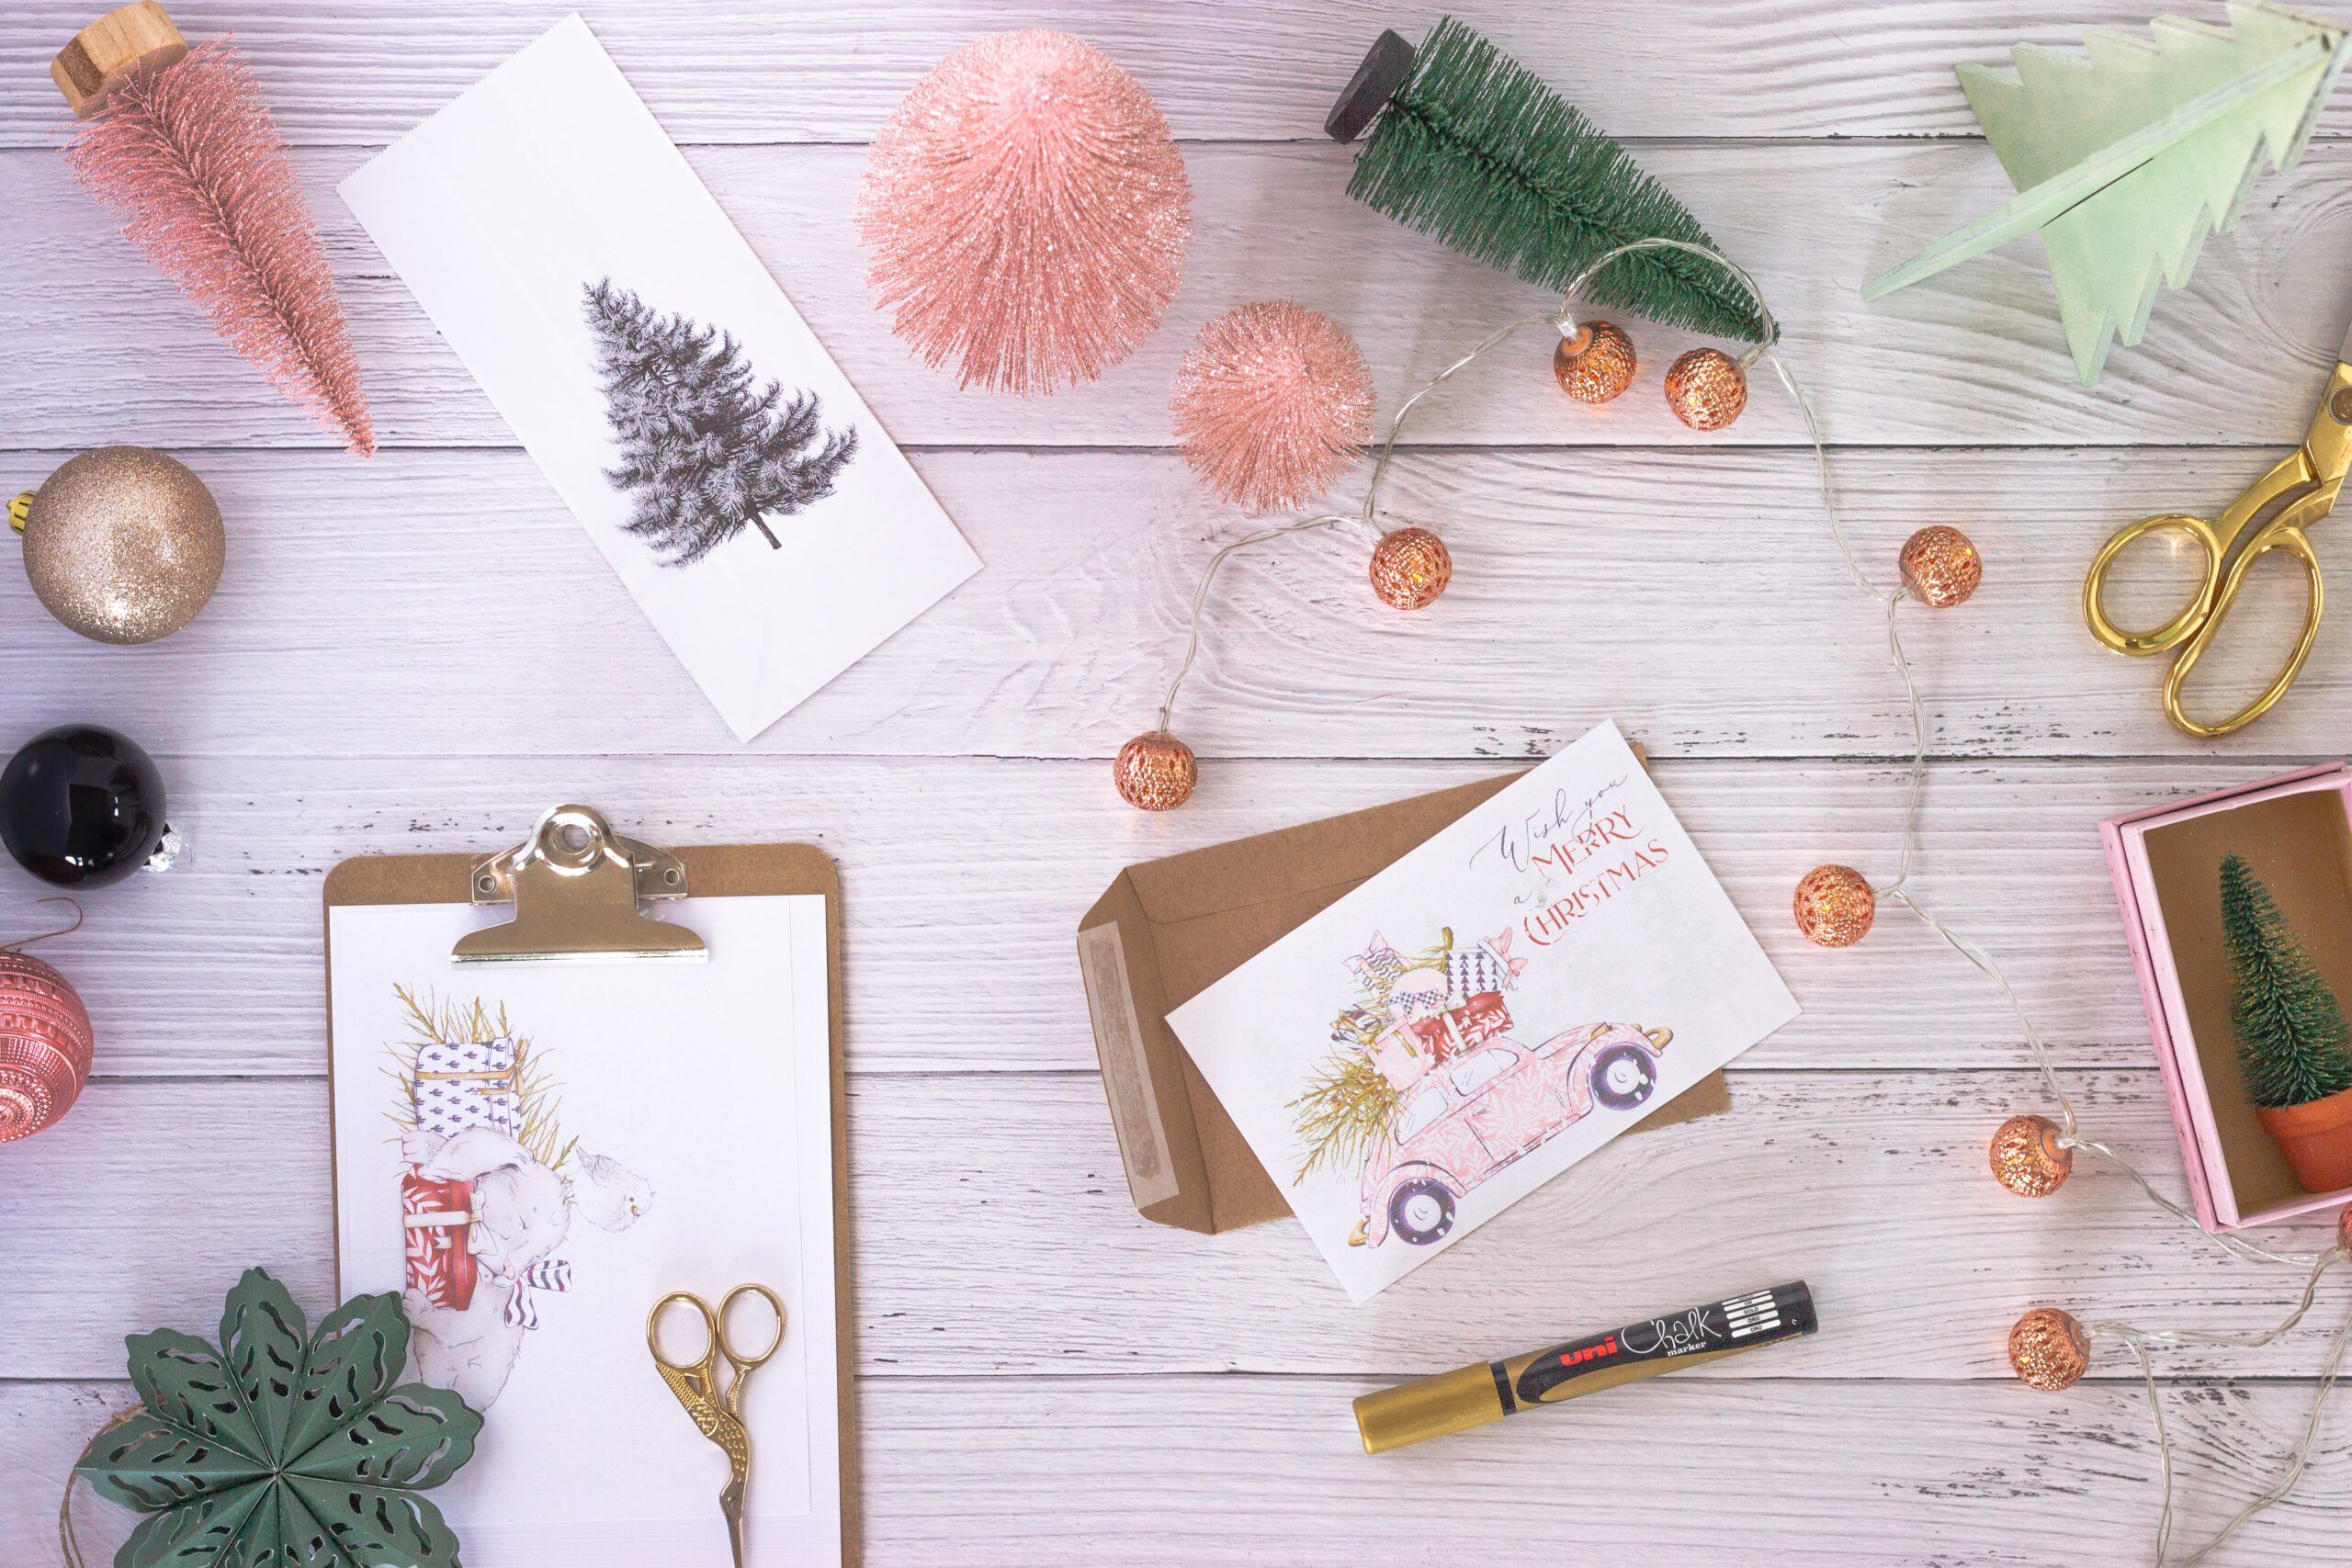 Kreativ-Werk-Stadt: Auf einem Holztisch liegen verschiedene Weihnachtsbastelsachen wie Karten, kleine Tannenbäume, Scheren und Stifte verteilt rum